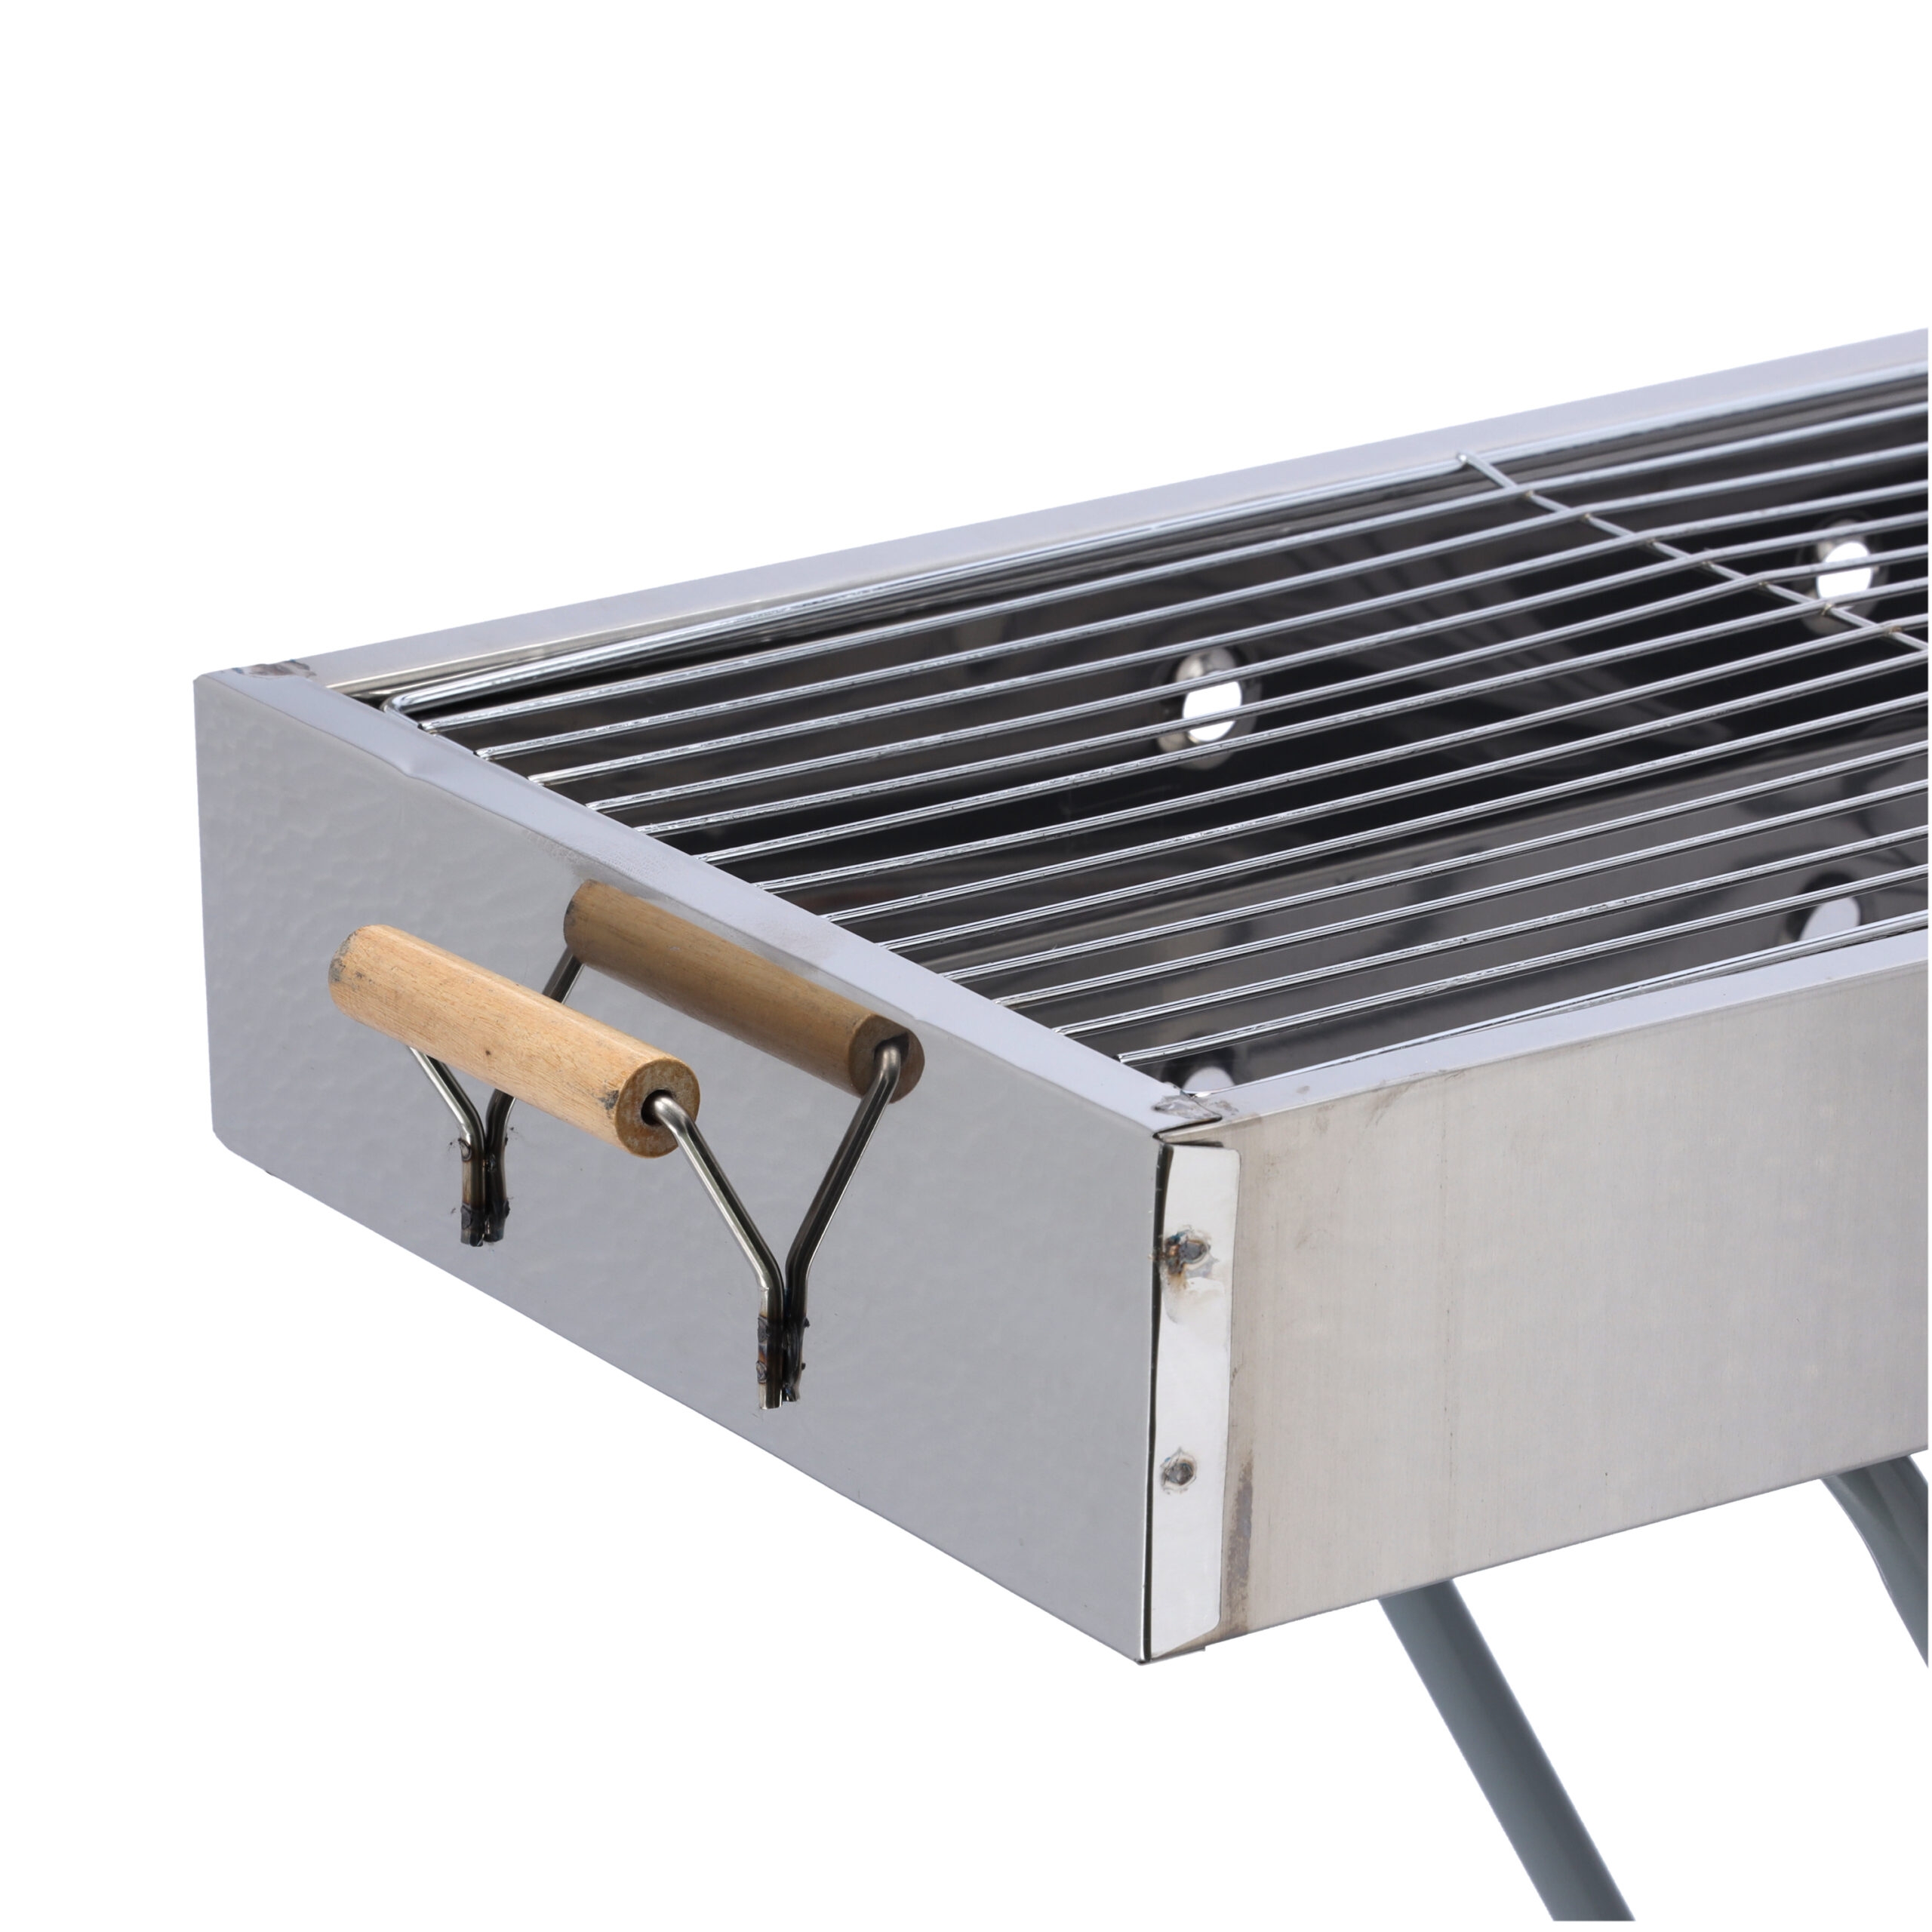 شواية ( شواية فحم ) قابلة للطي - فضي Royalford - Barbecue Stand with Grill, RF10366 - Durable Stainless Construction